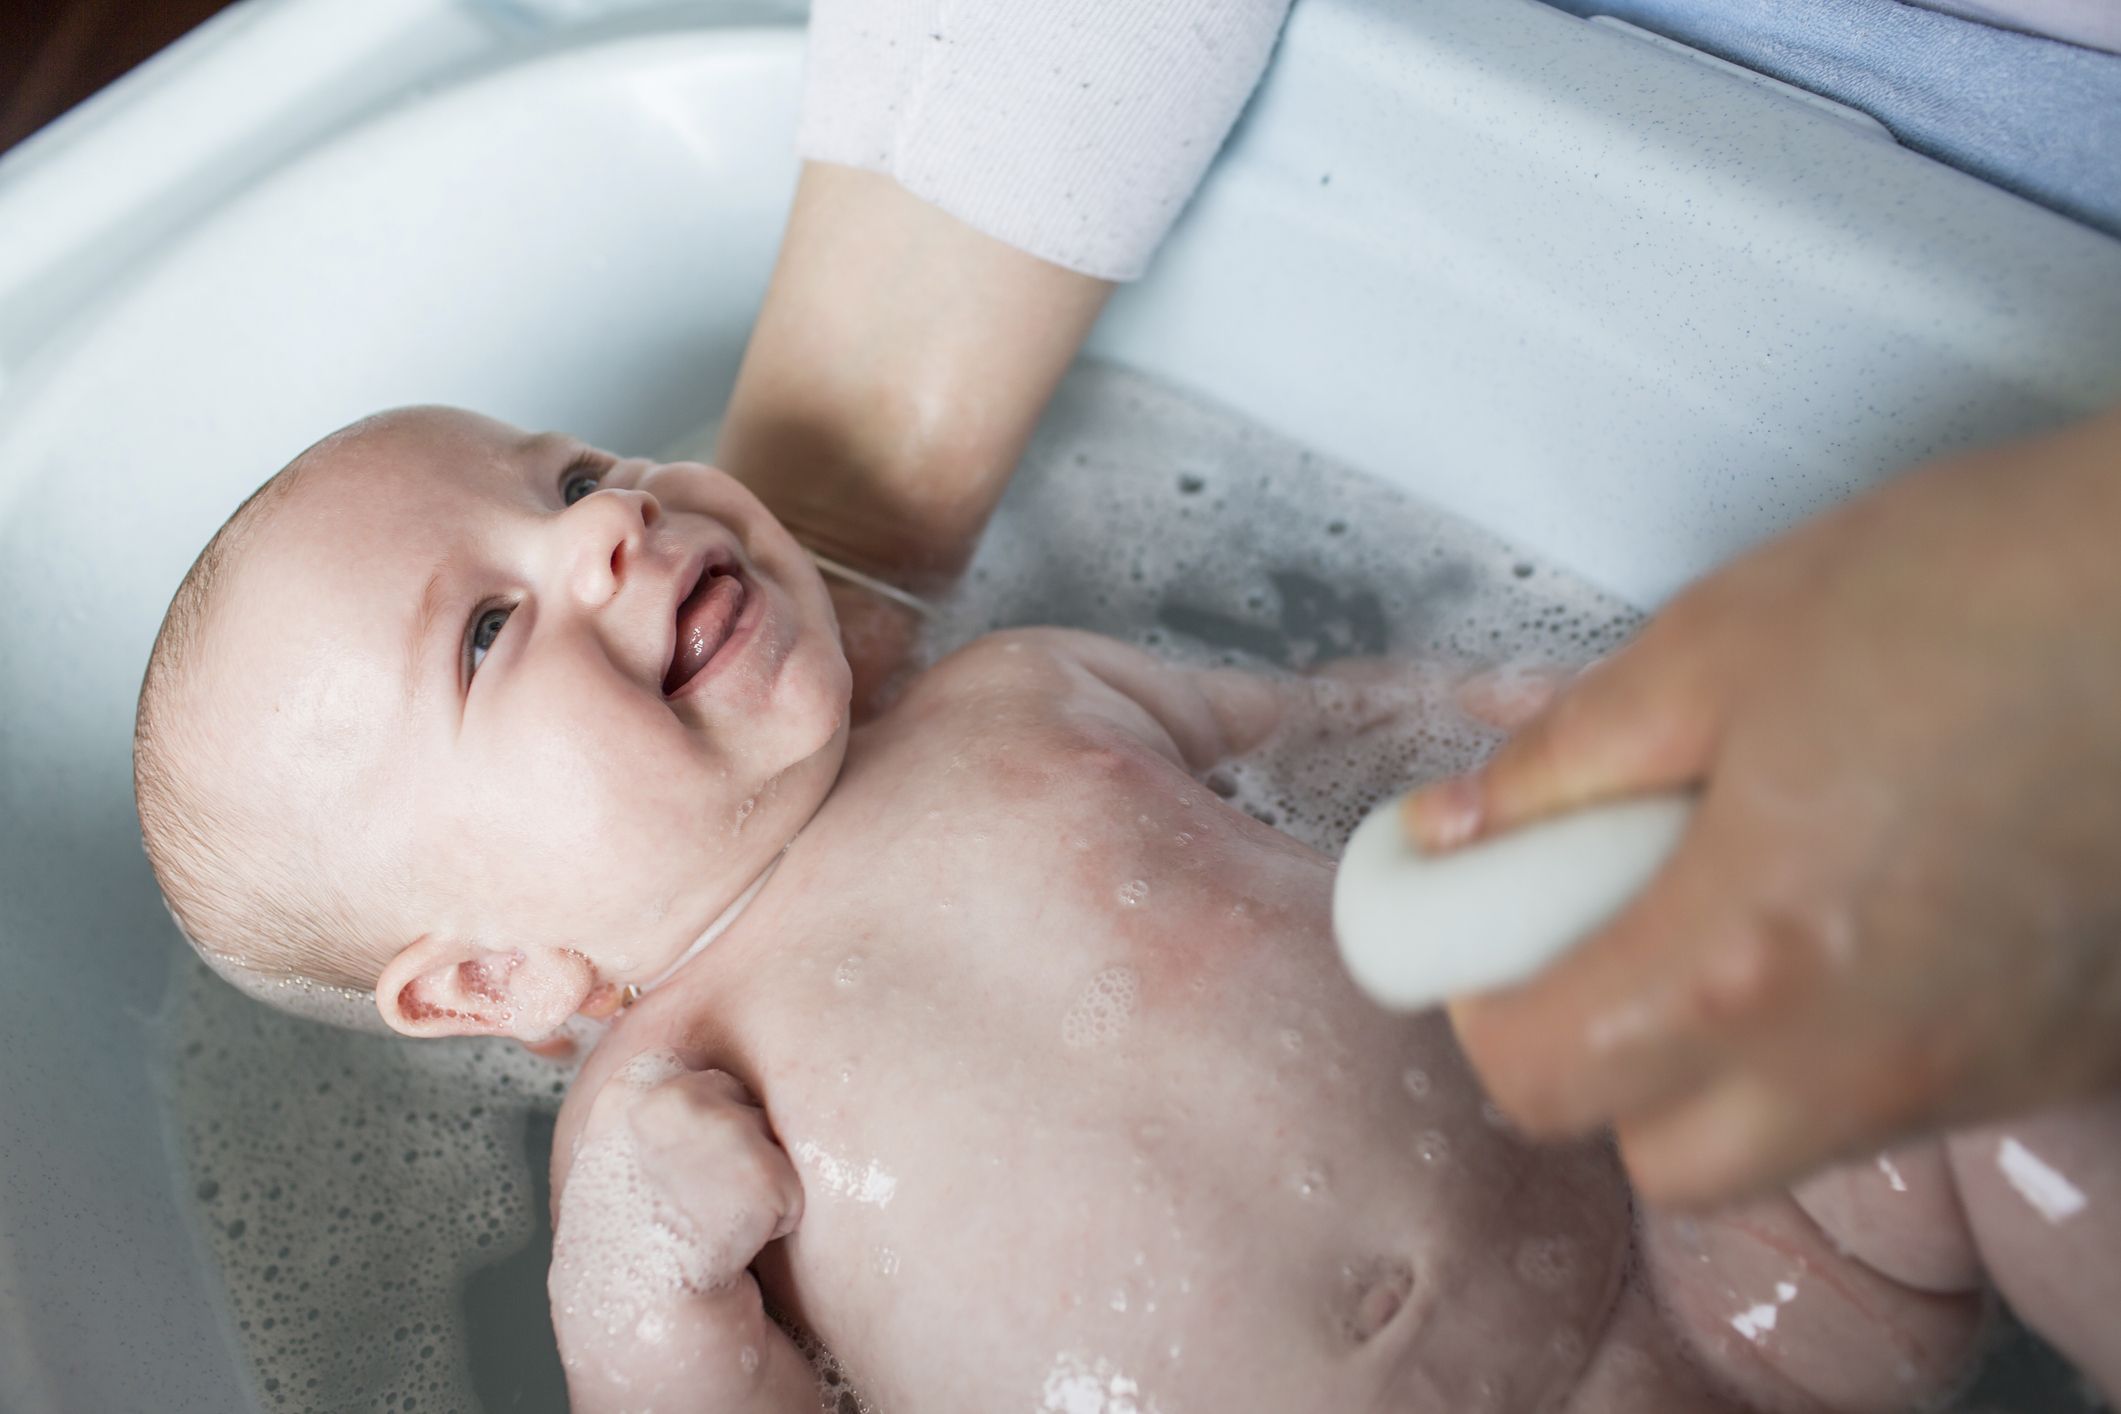 8 bañeras para bebés muy buenas, prácticas y cómodas